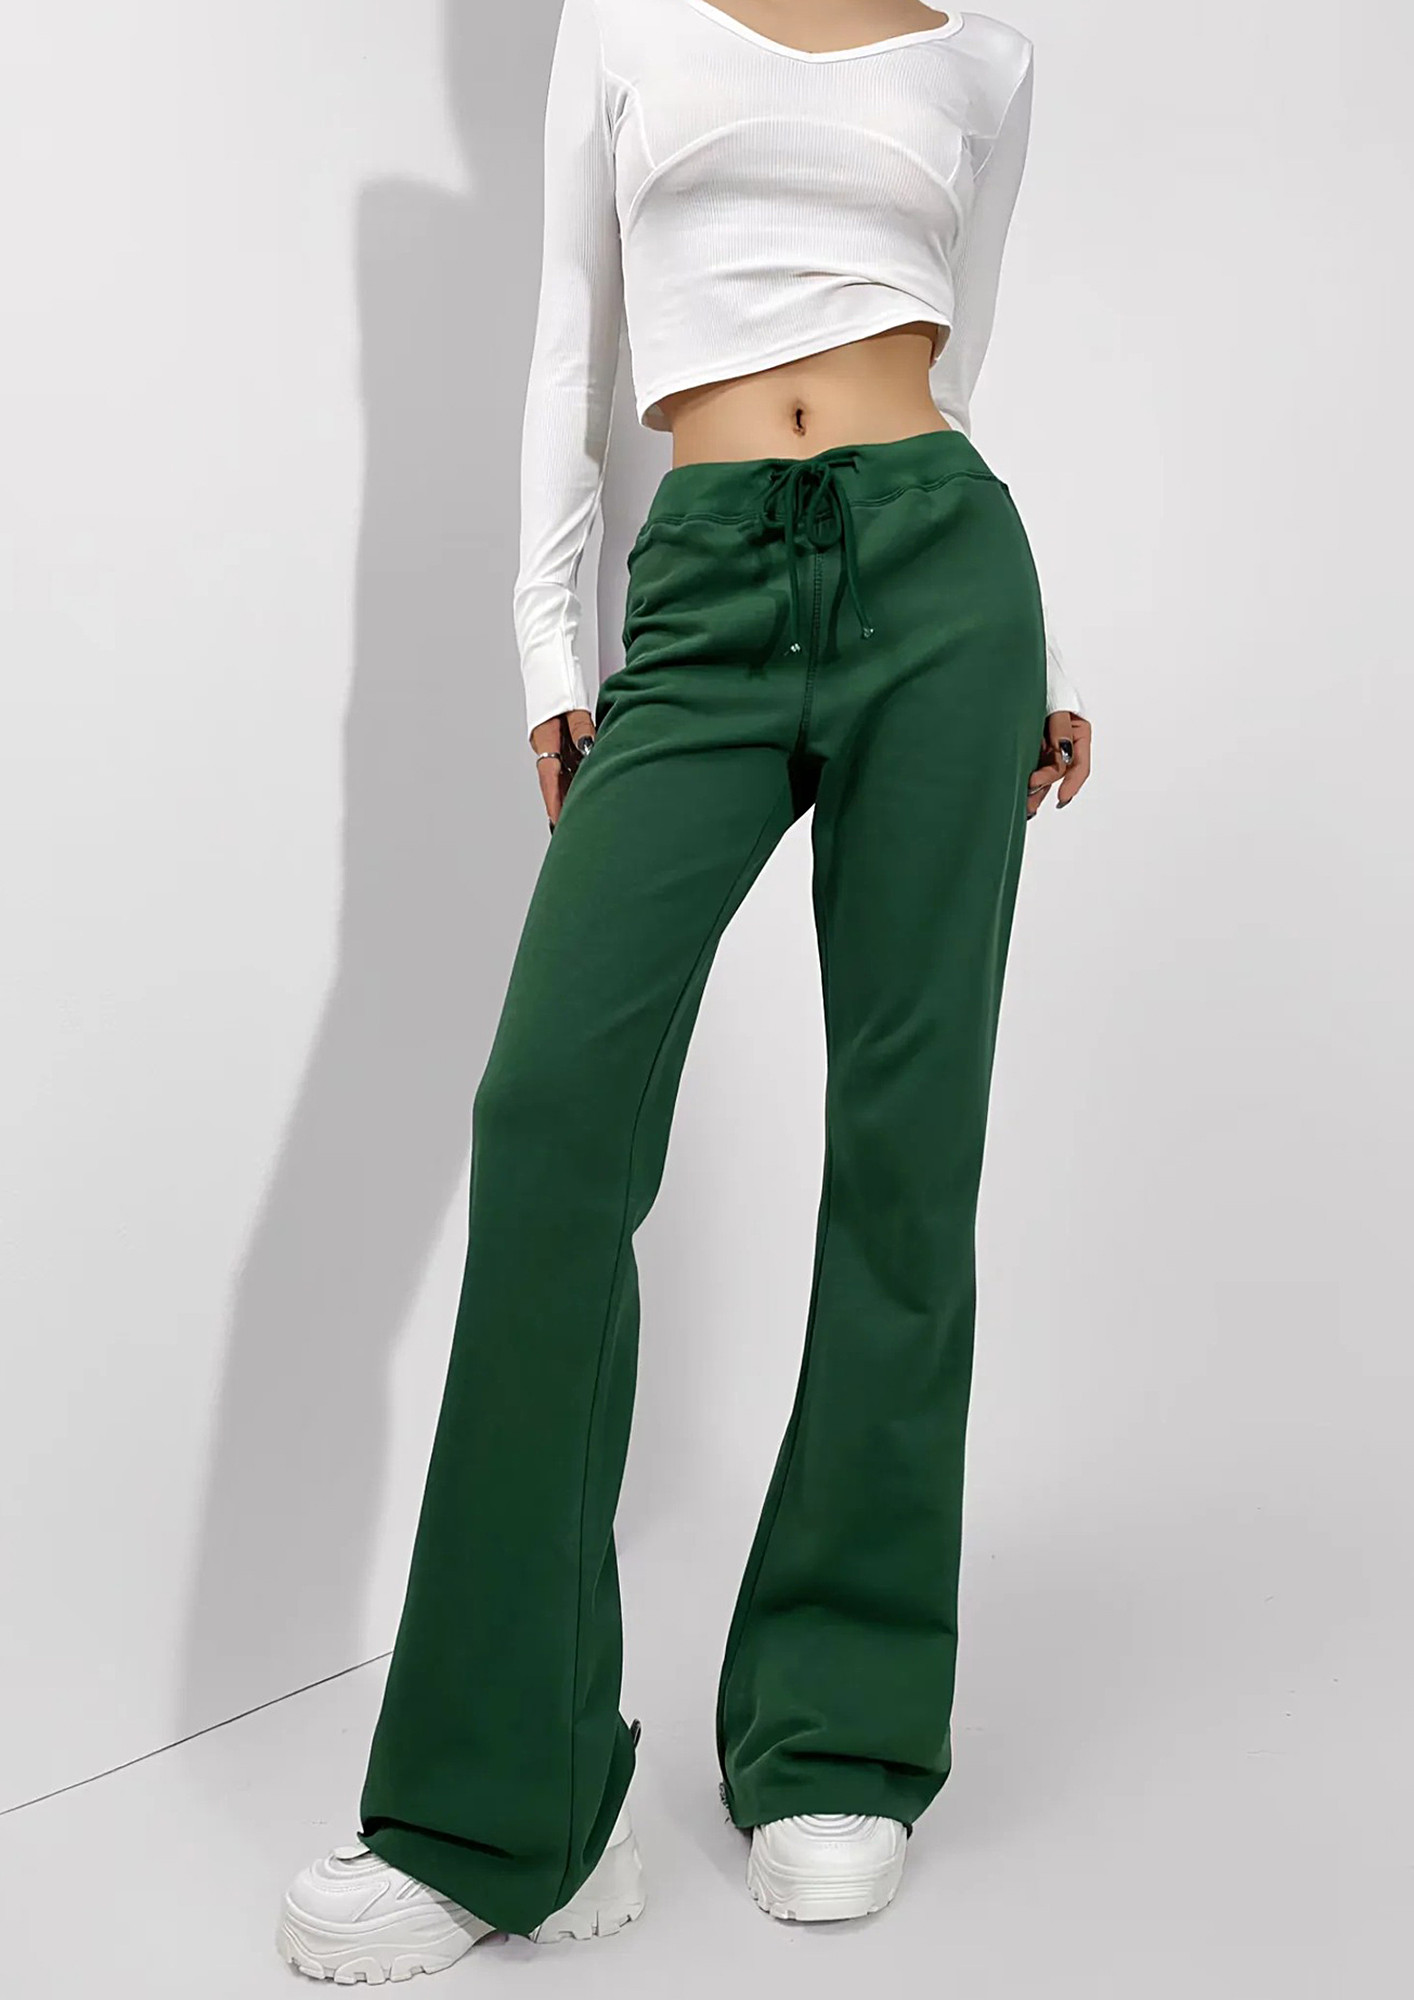 Buy Floerns Women's Velvet Flare Leg High Waist Casual Bell Bottom Long  Pants, Dark Green, Medium at Amazon.in